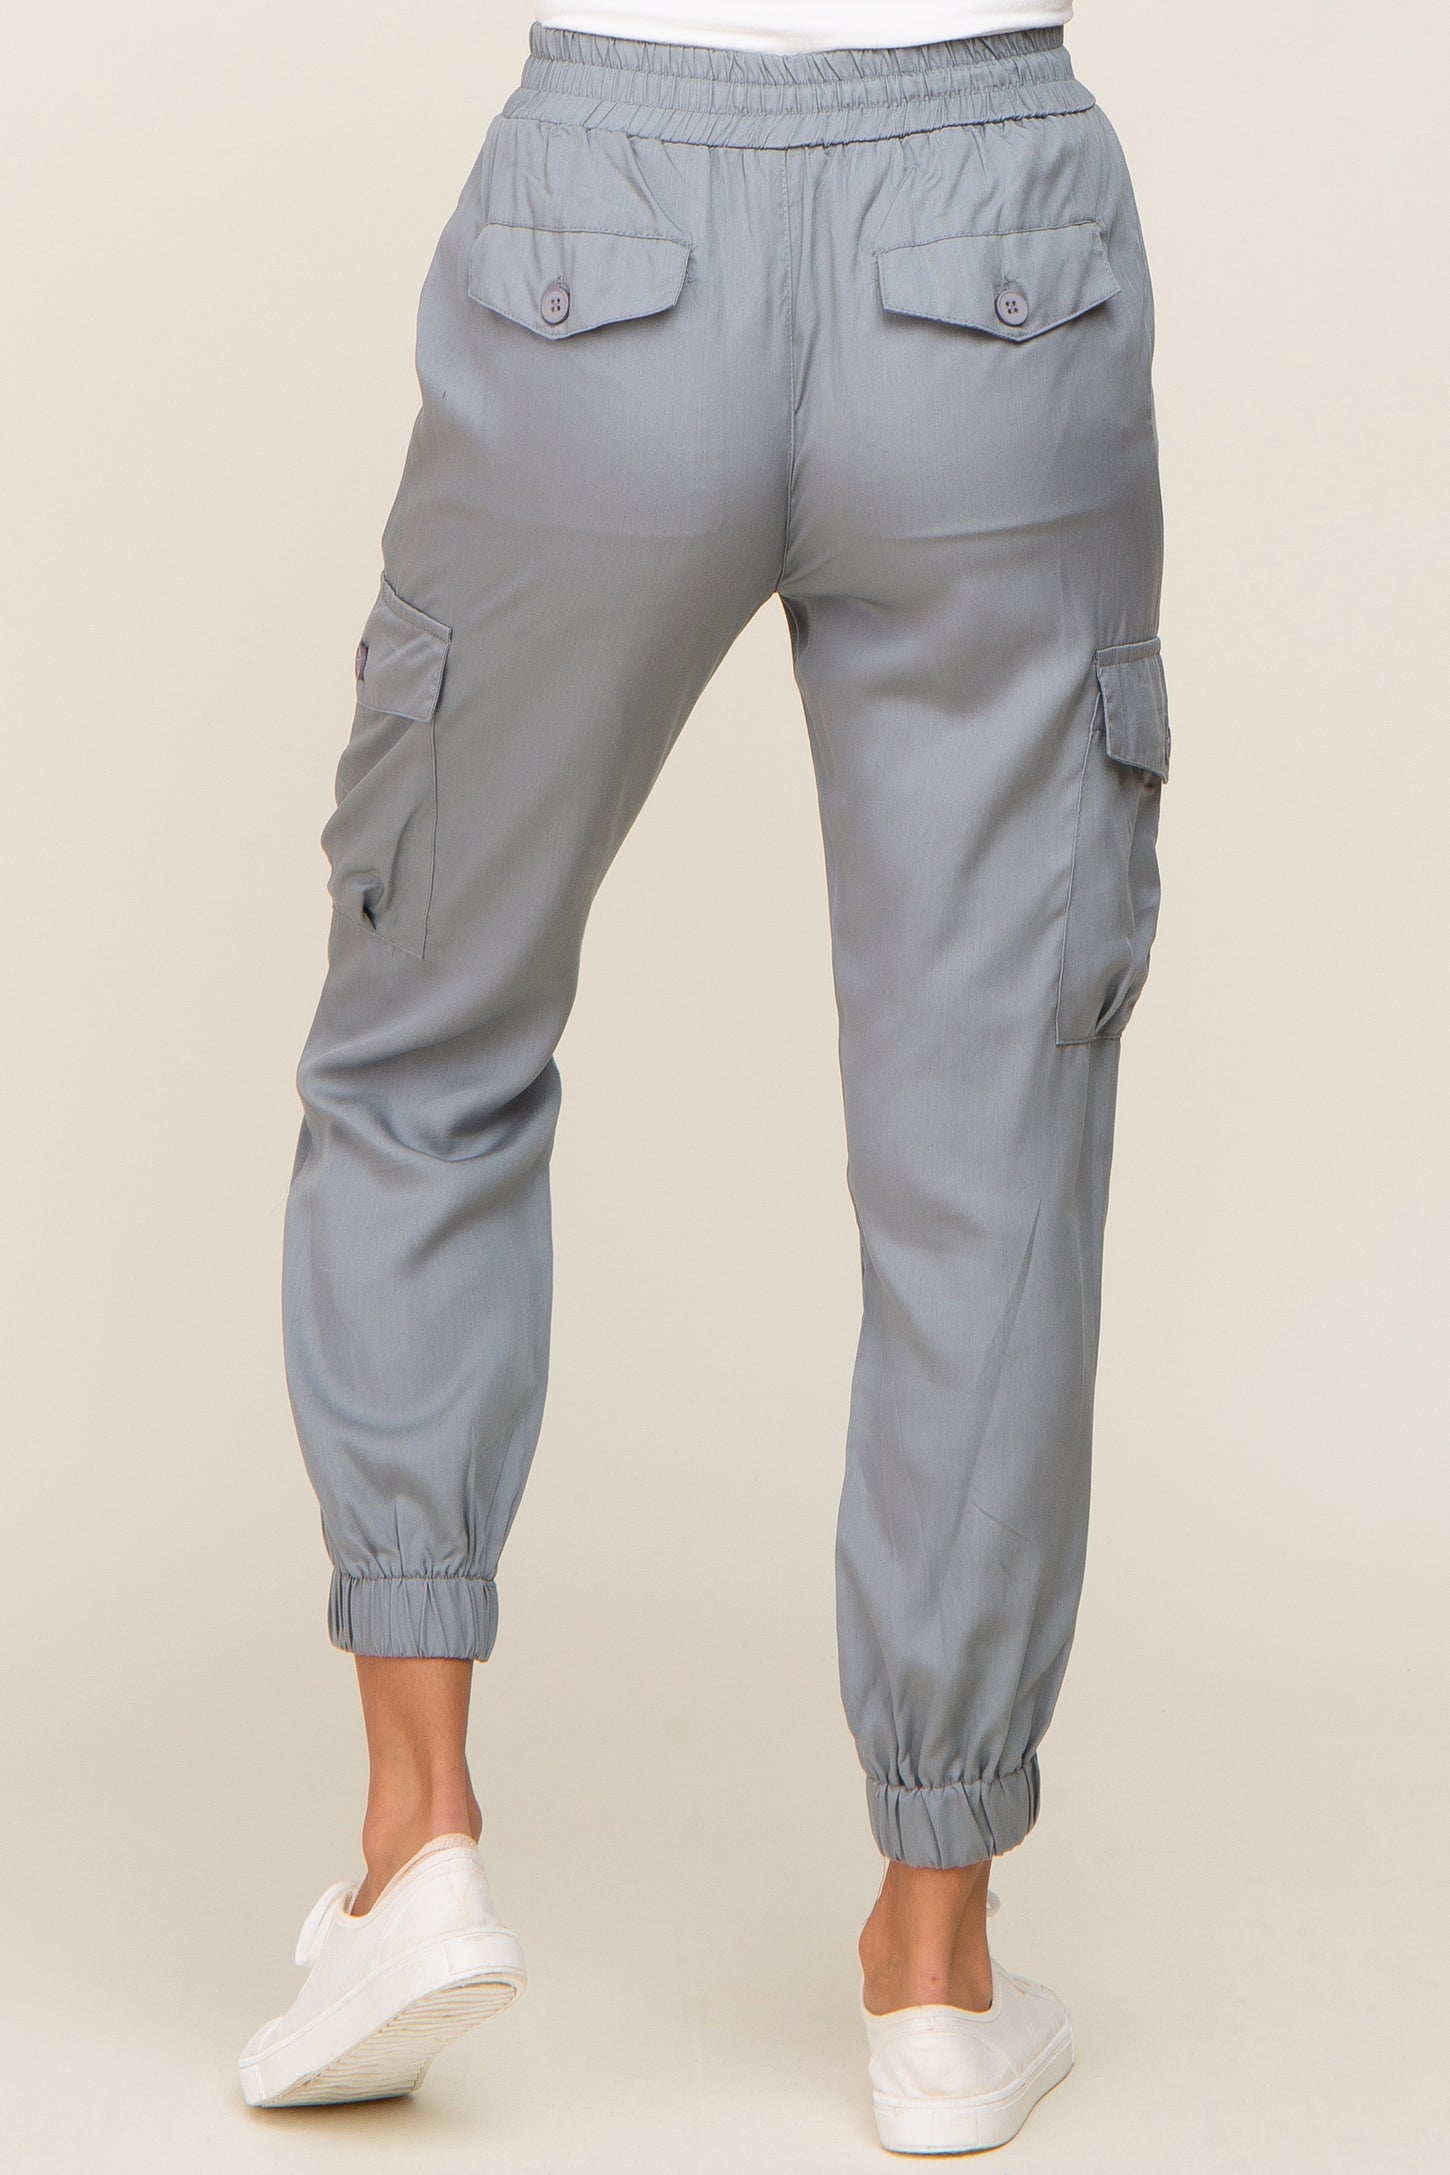 Grey Drawstring Cargo Pants